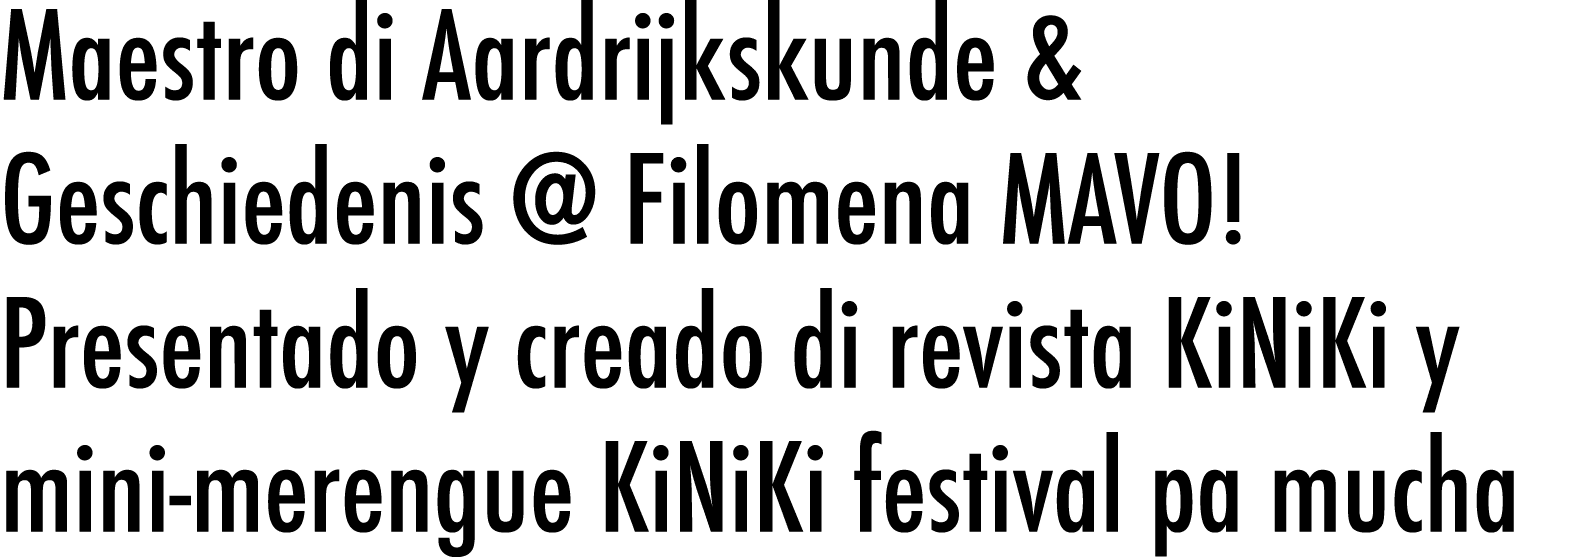 Maestro di Aardrijkskunde & Geschiedenis   Filomena MAVO  Presentado y creado di revista KiNiKi y mini-merengue KiNiK   